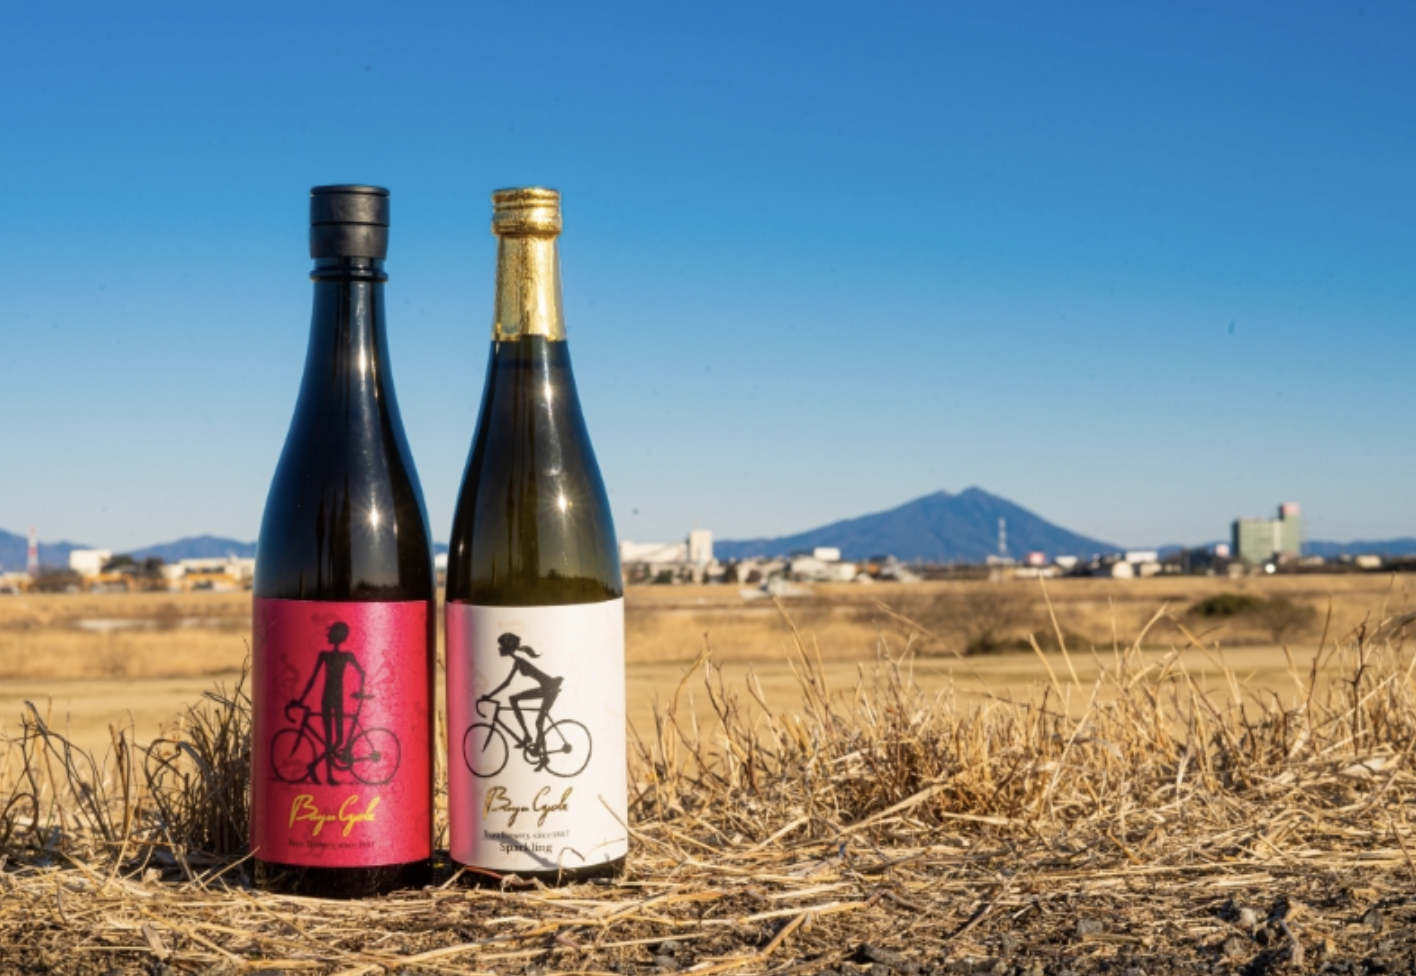 170年の歴史を持つ酒蔵武勇が作る日本酒「Buyu Cycle」のラベルデザインを所属クリエイターの高坂希太郎が担当